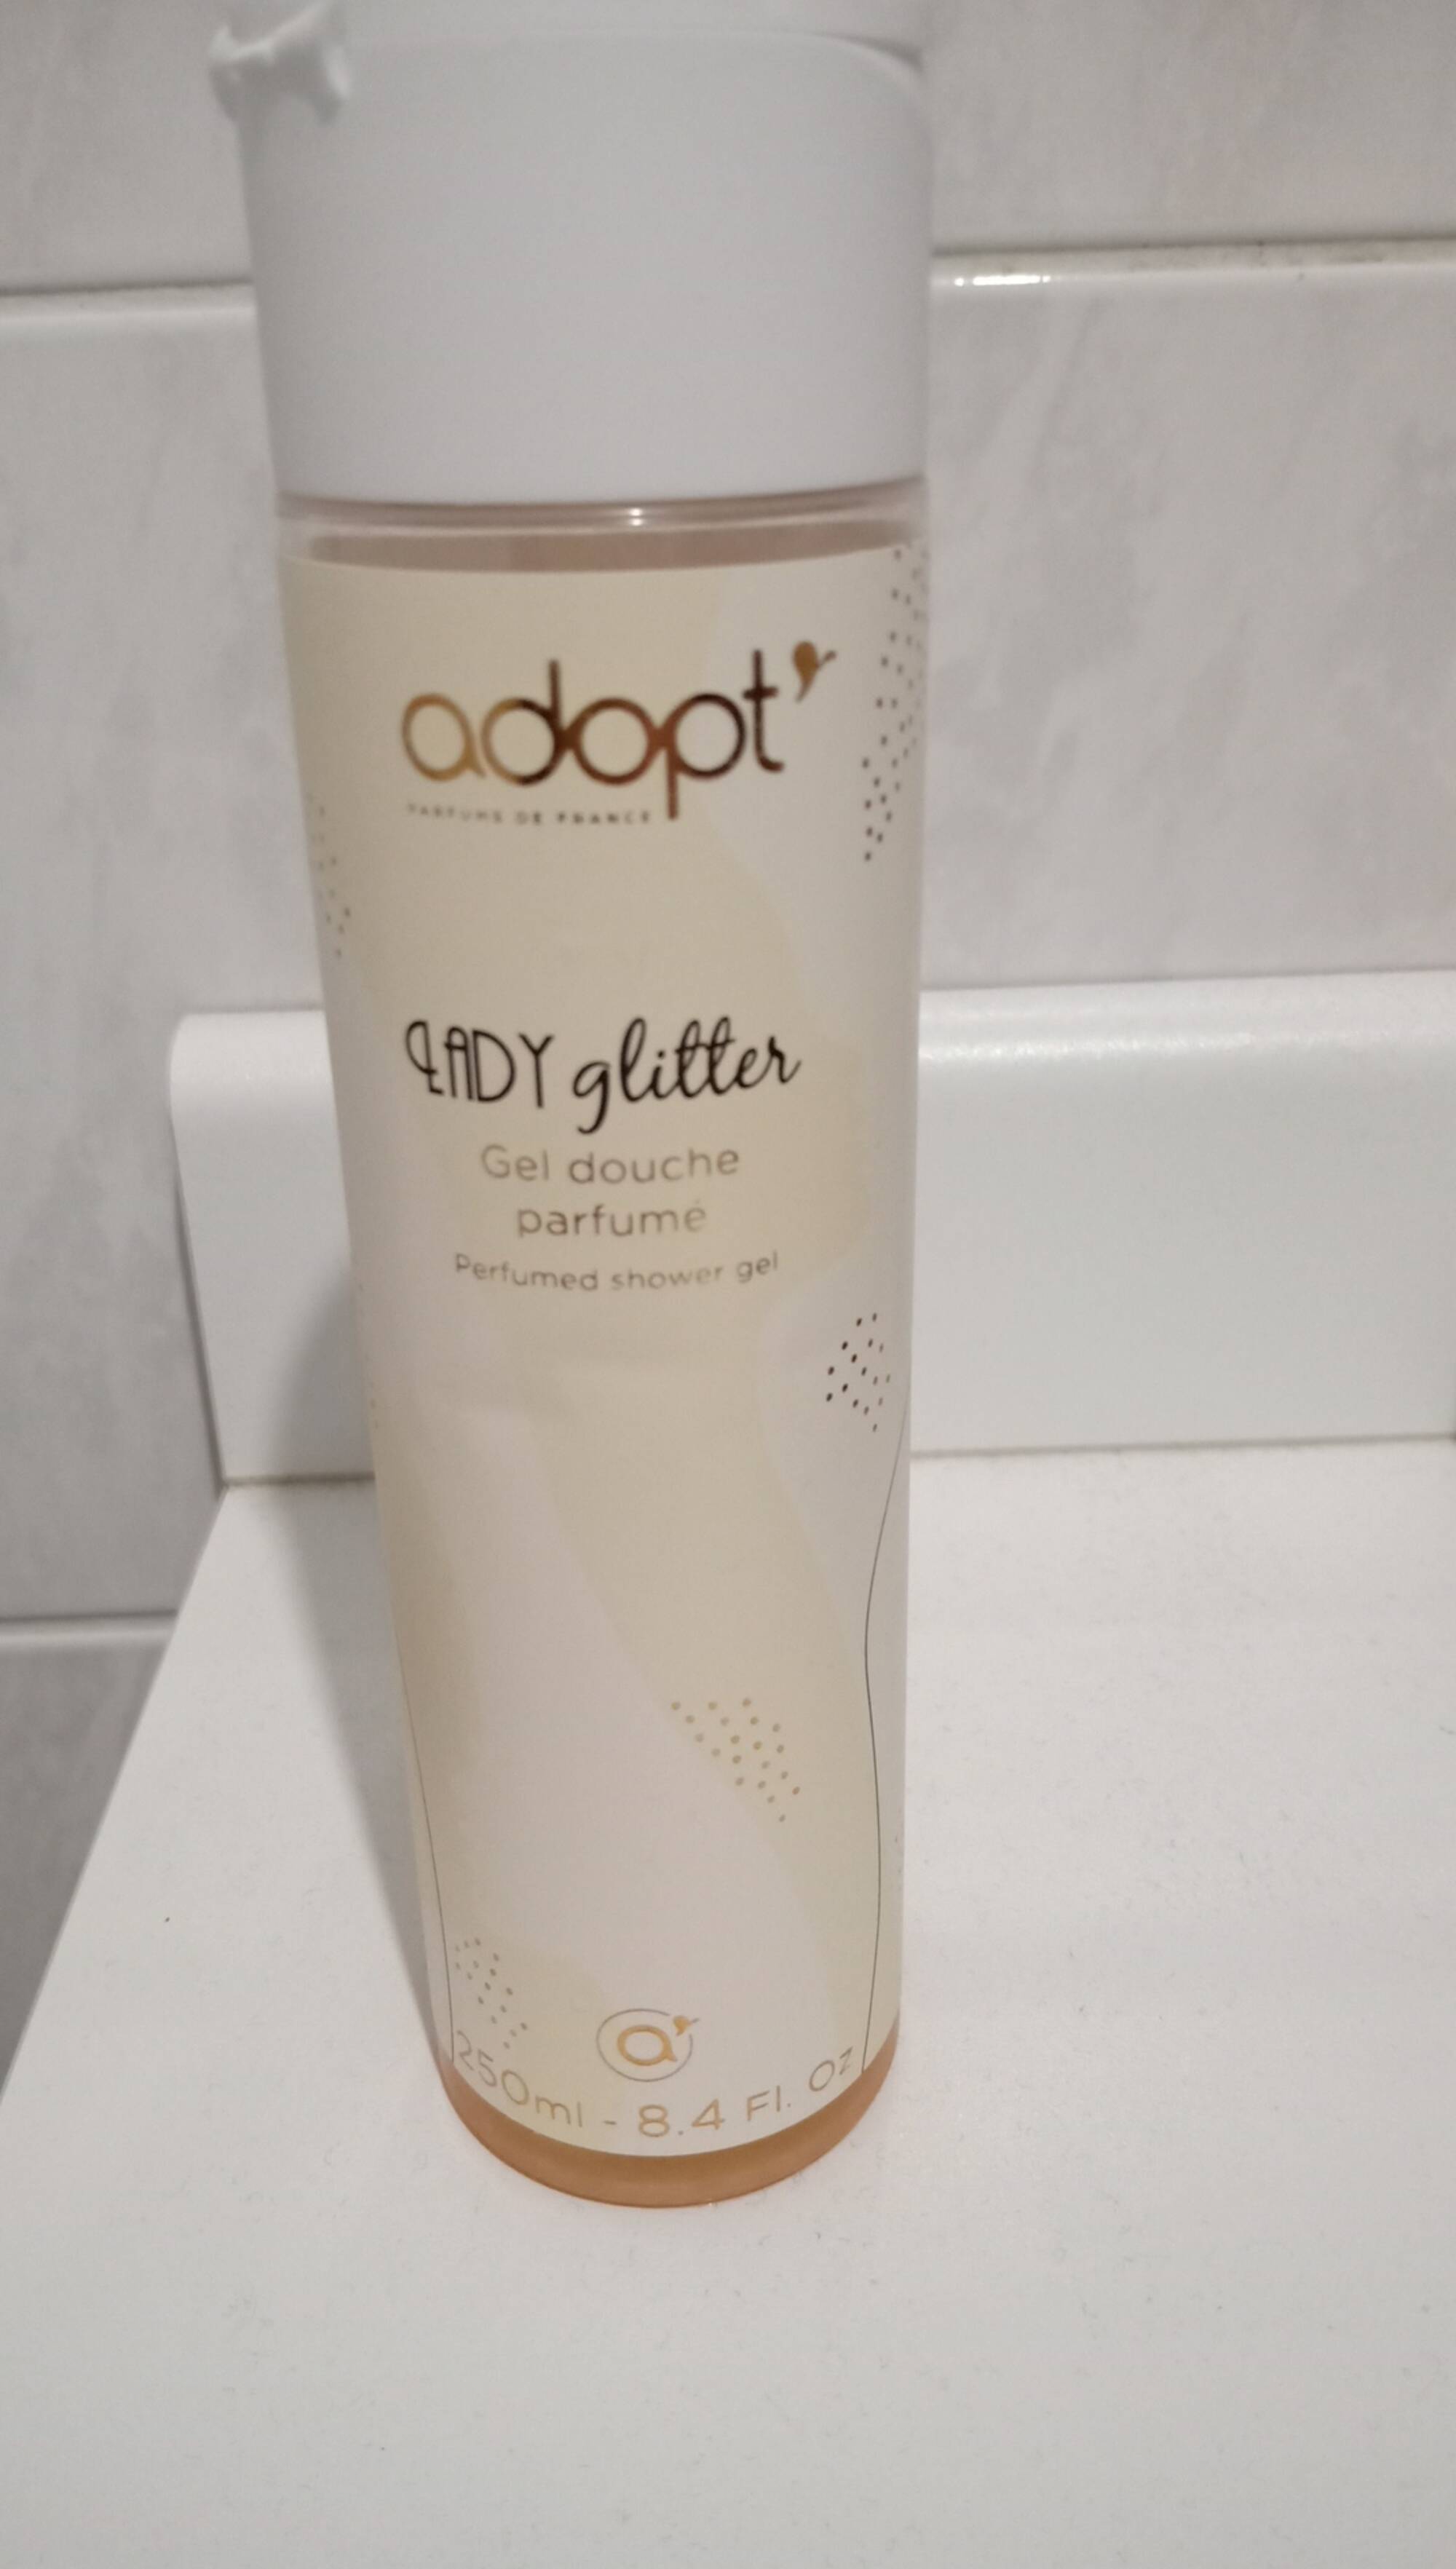 ADOPT' - Lady glitter - Gel douche parfumé